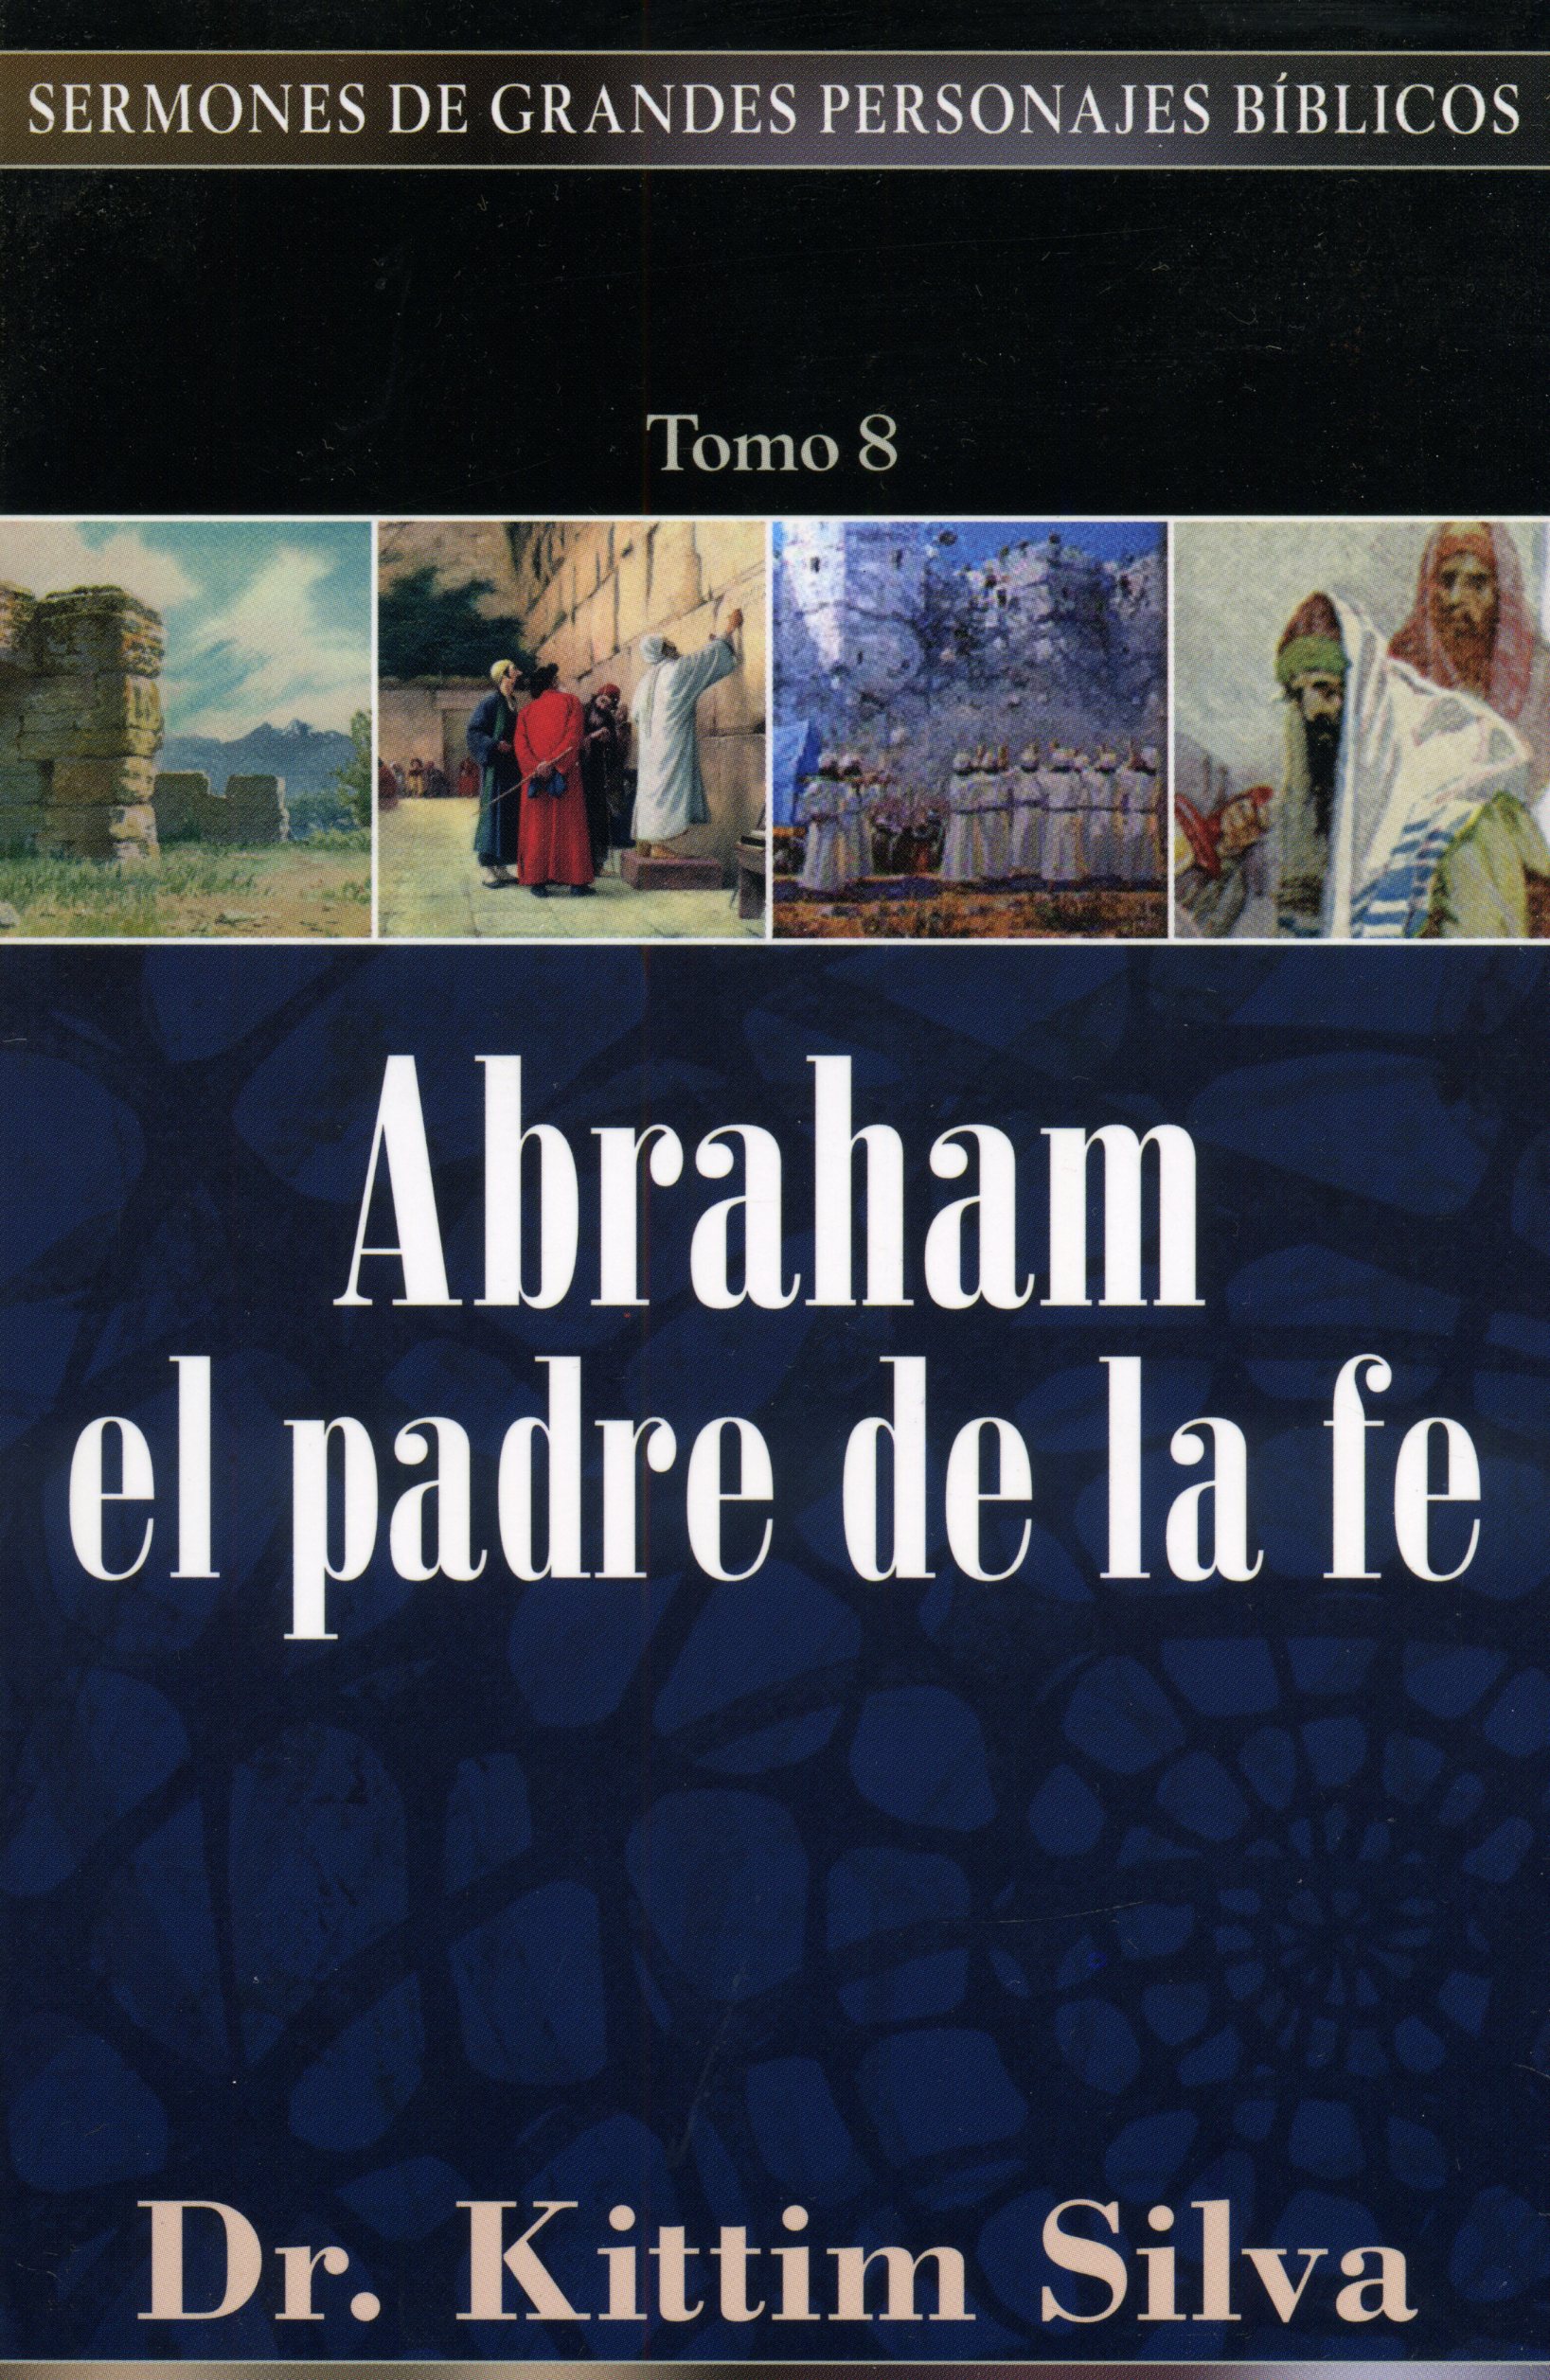 Abraham el padre de la fe